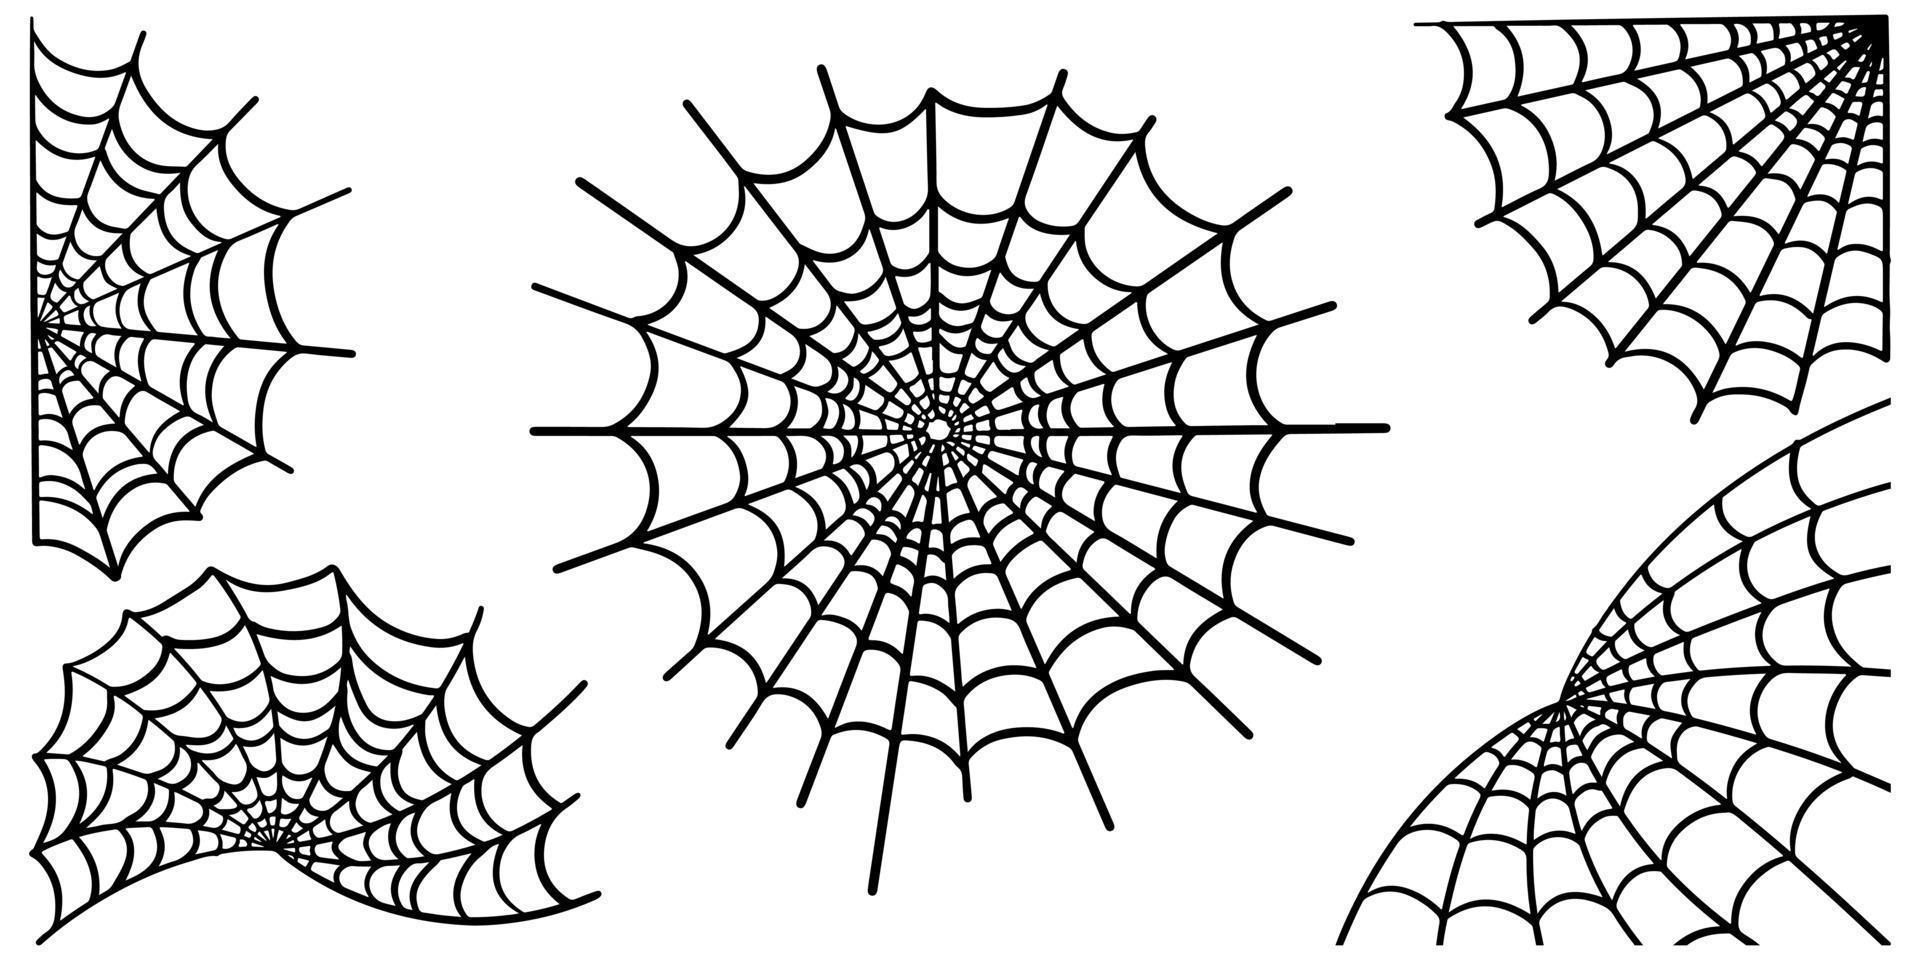 Spinnennetz-Set isoliert auf weißem Hintergrund. Gekritzelvektorillustration des Spinnennetzes. vektor